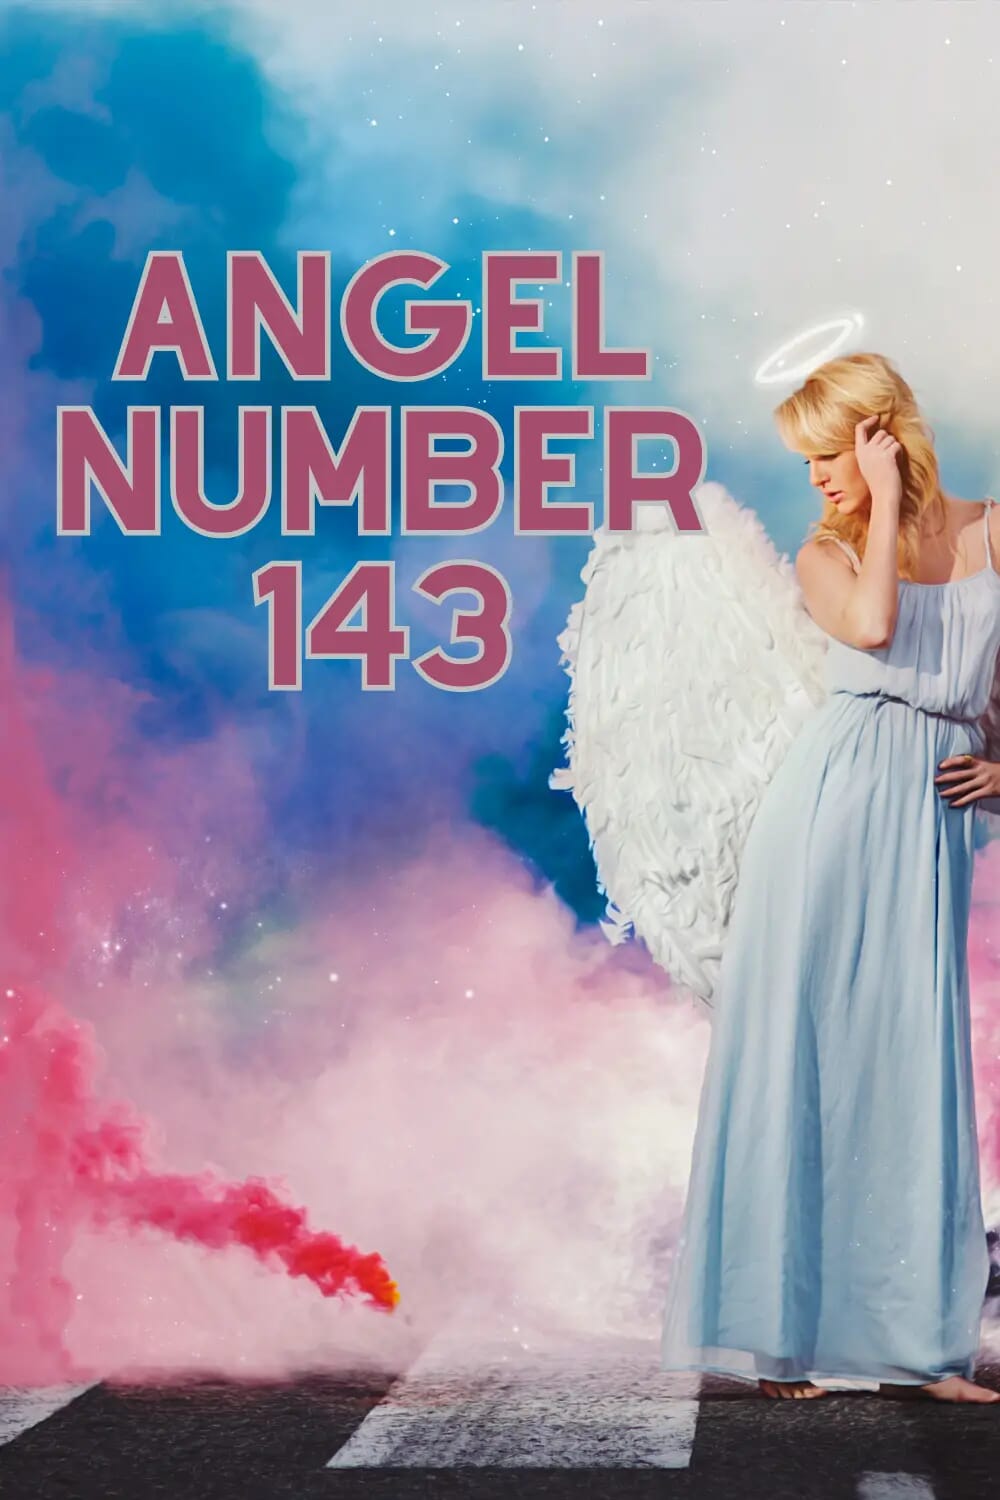 Angel number 143